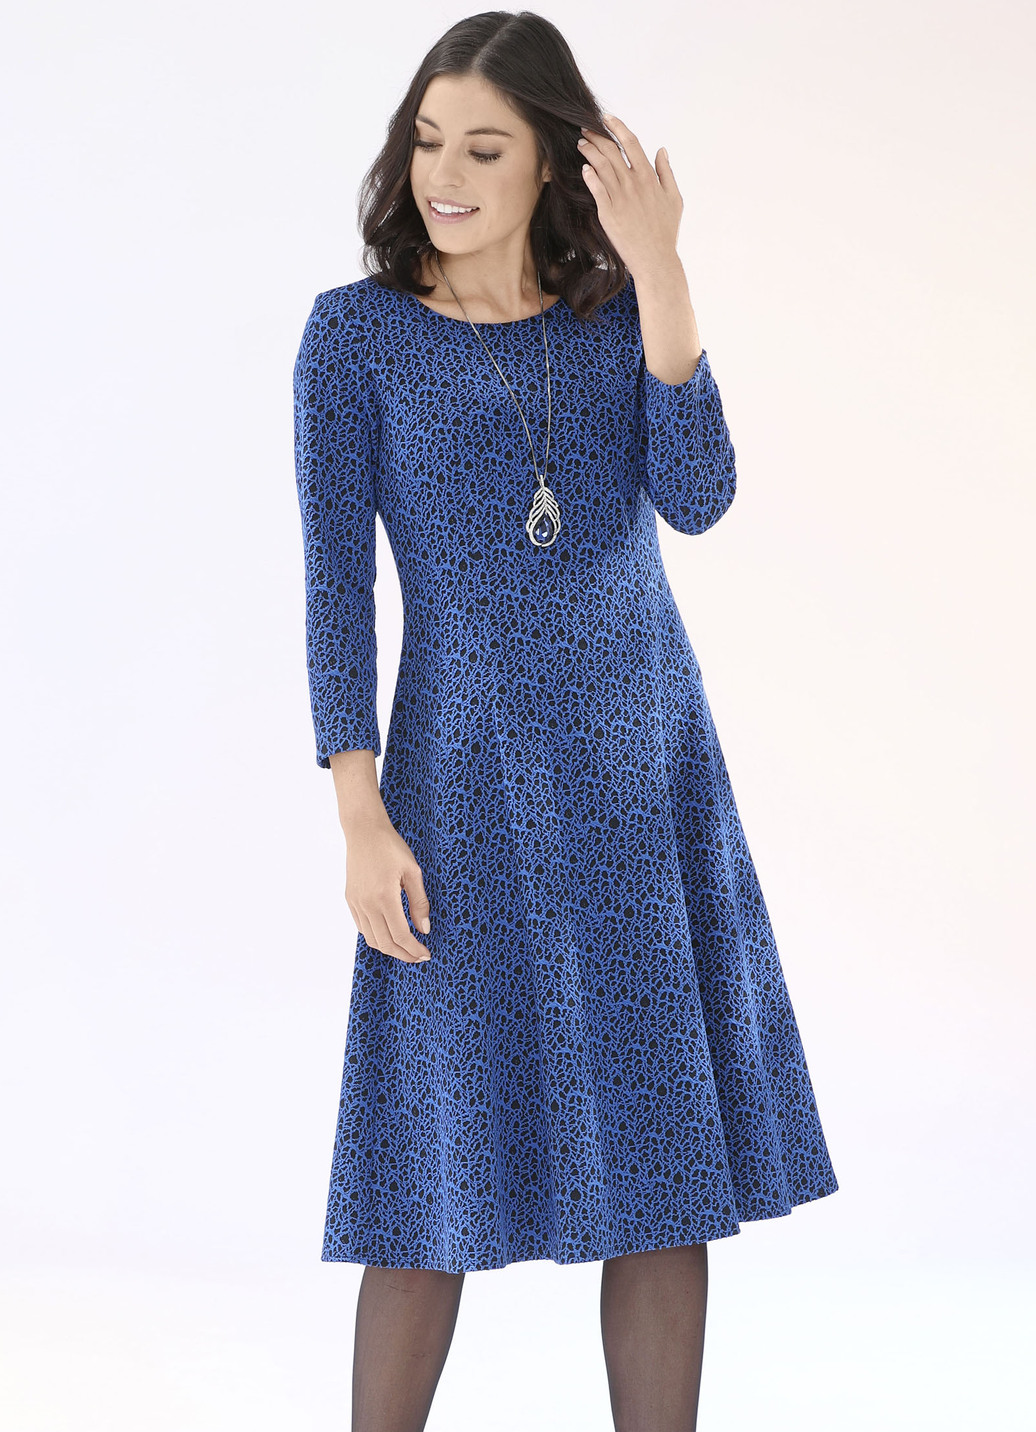 Strick-Kleid mit leichtem Cloqué-Effekt, Royalblau-Schwarz, Größe 548 von KLAUS MODELLE